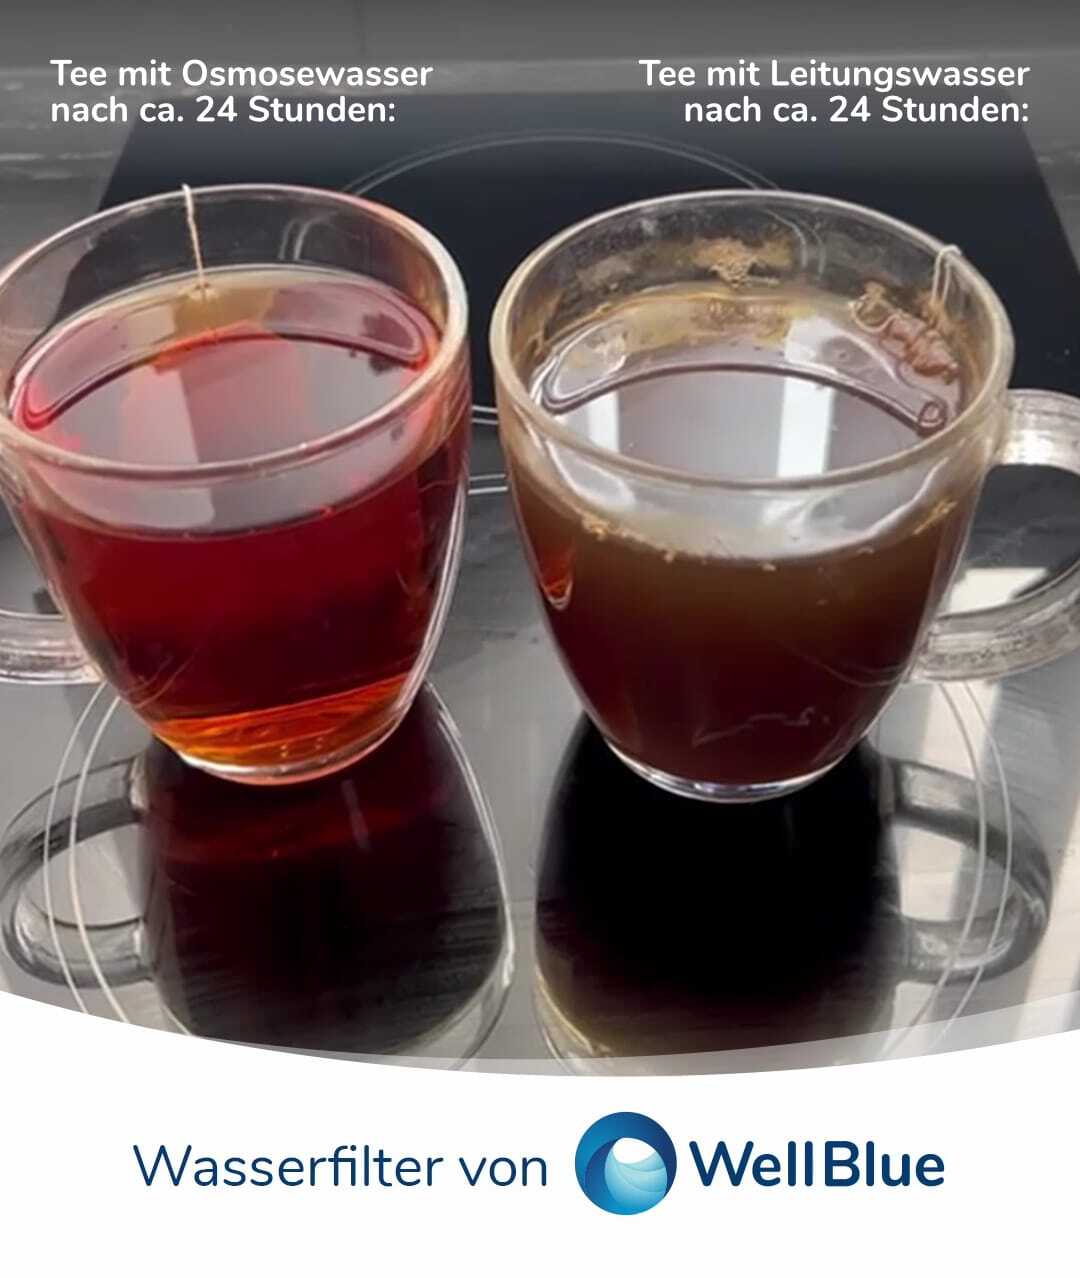 Tee Osmosewasser vs. Leitungswasser